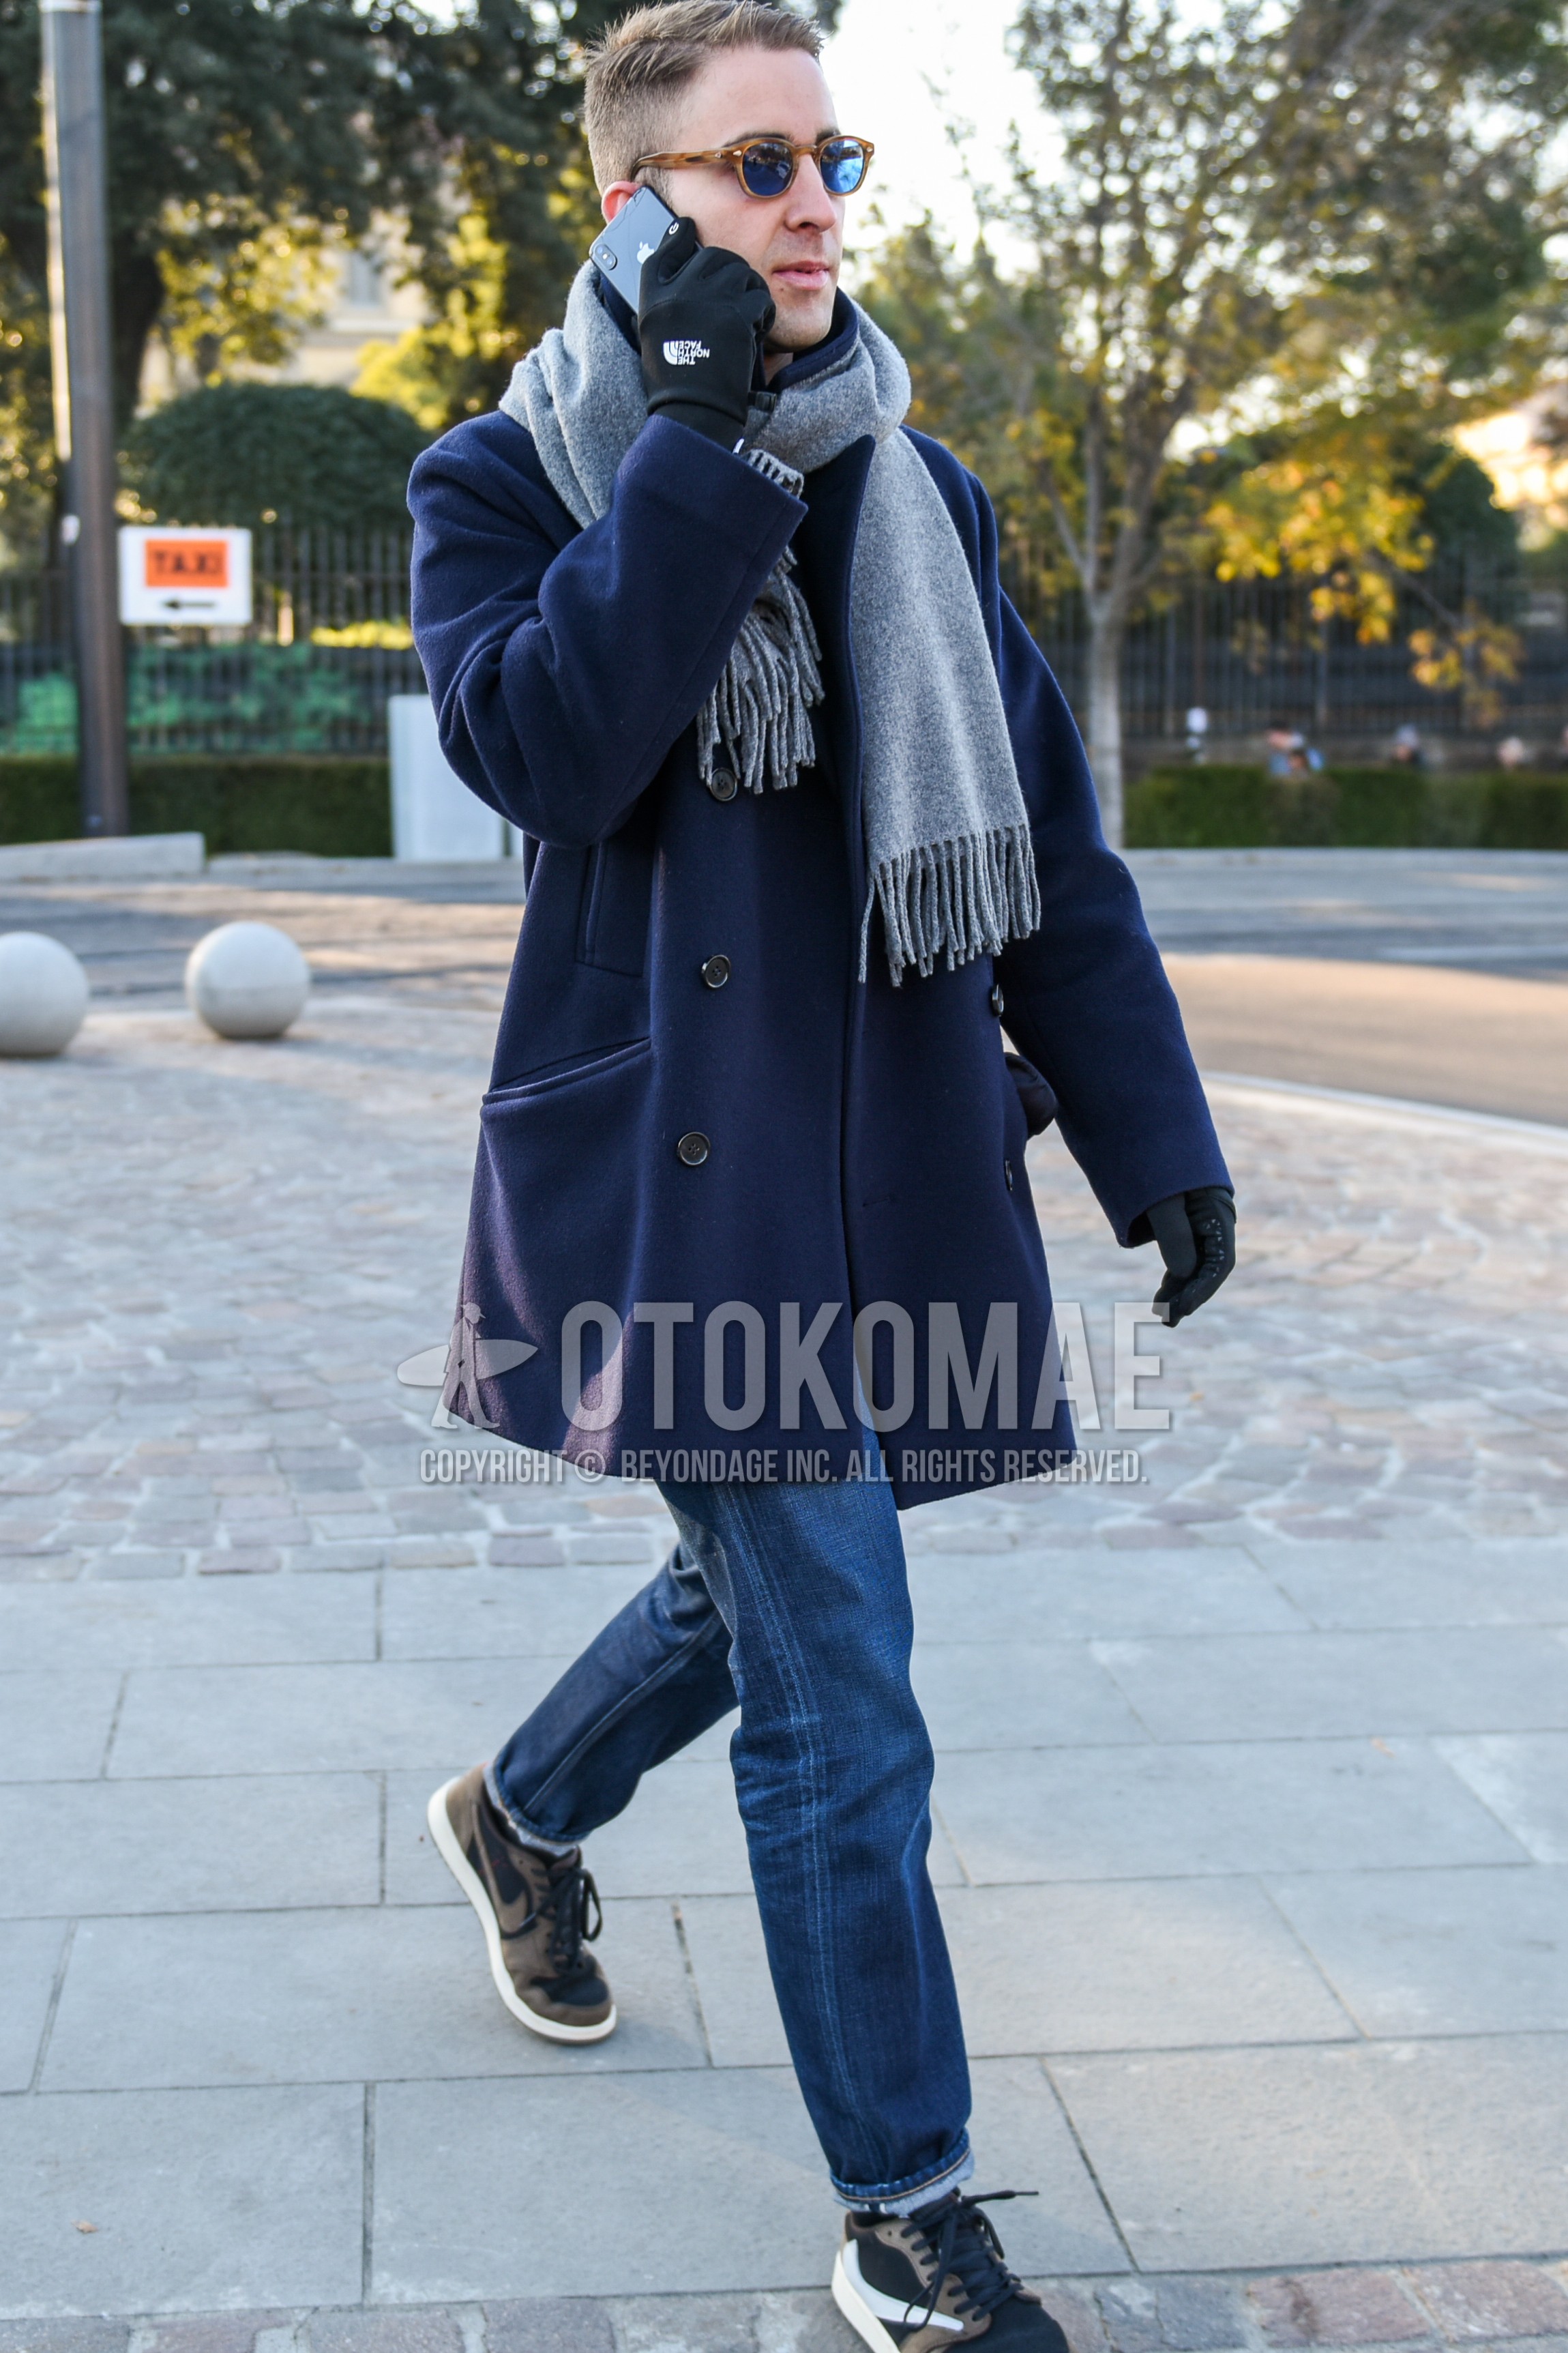 Men's autumn winter outfit with beige tortoiseshell sunglasses, gray plain scarf, navy plain p coat, blue plain denim/jeans, brown low-cut sneakers.